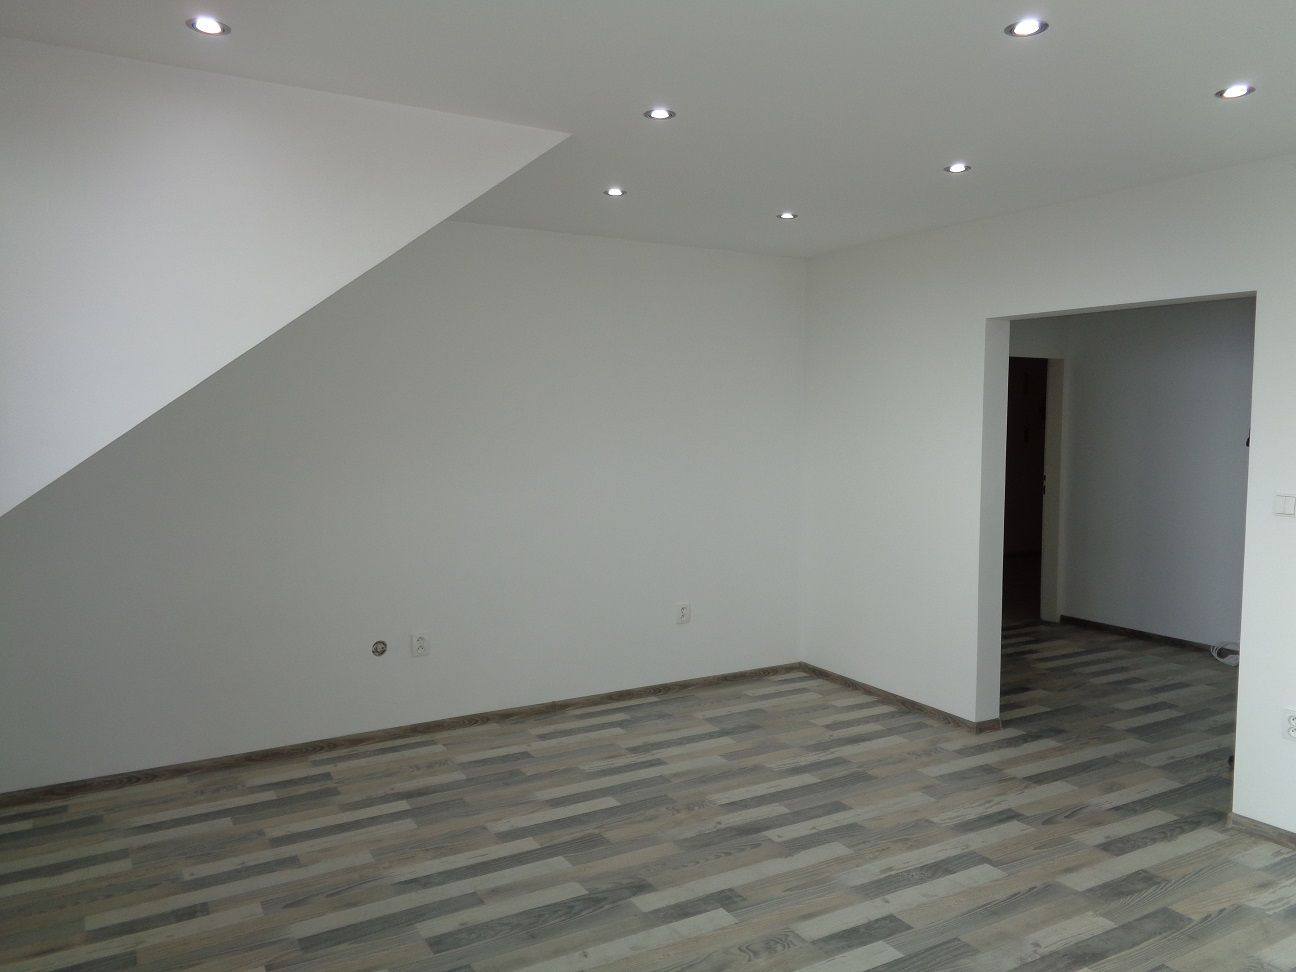 Predaj 4+1 byt  Vysoké Tatry - Tatranské Zruby , 99,40 m2 s 2 loggiami a s garážou 24 m2.